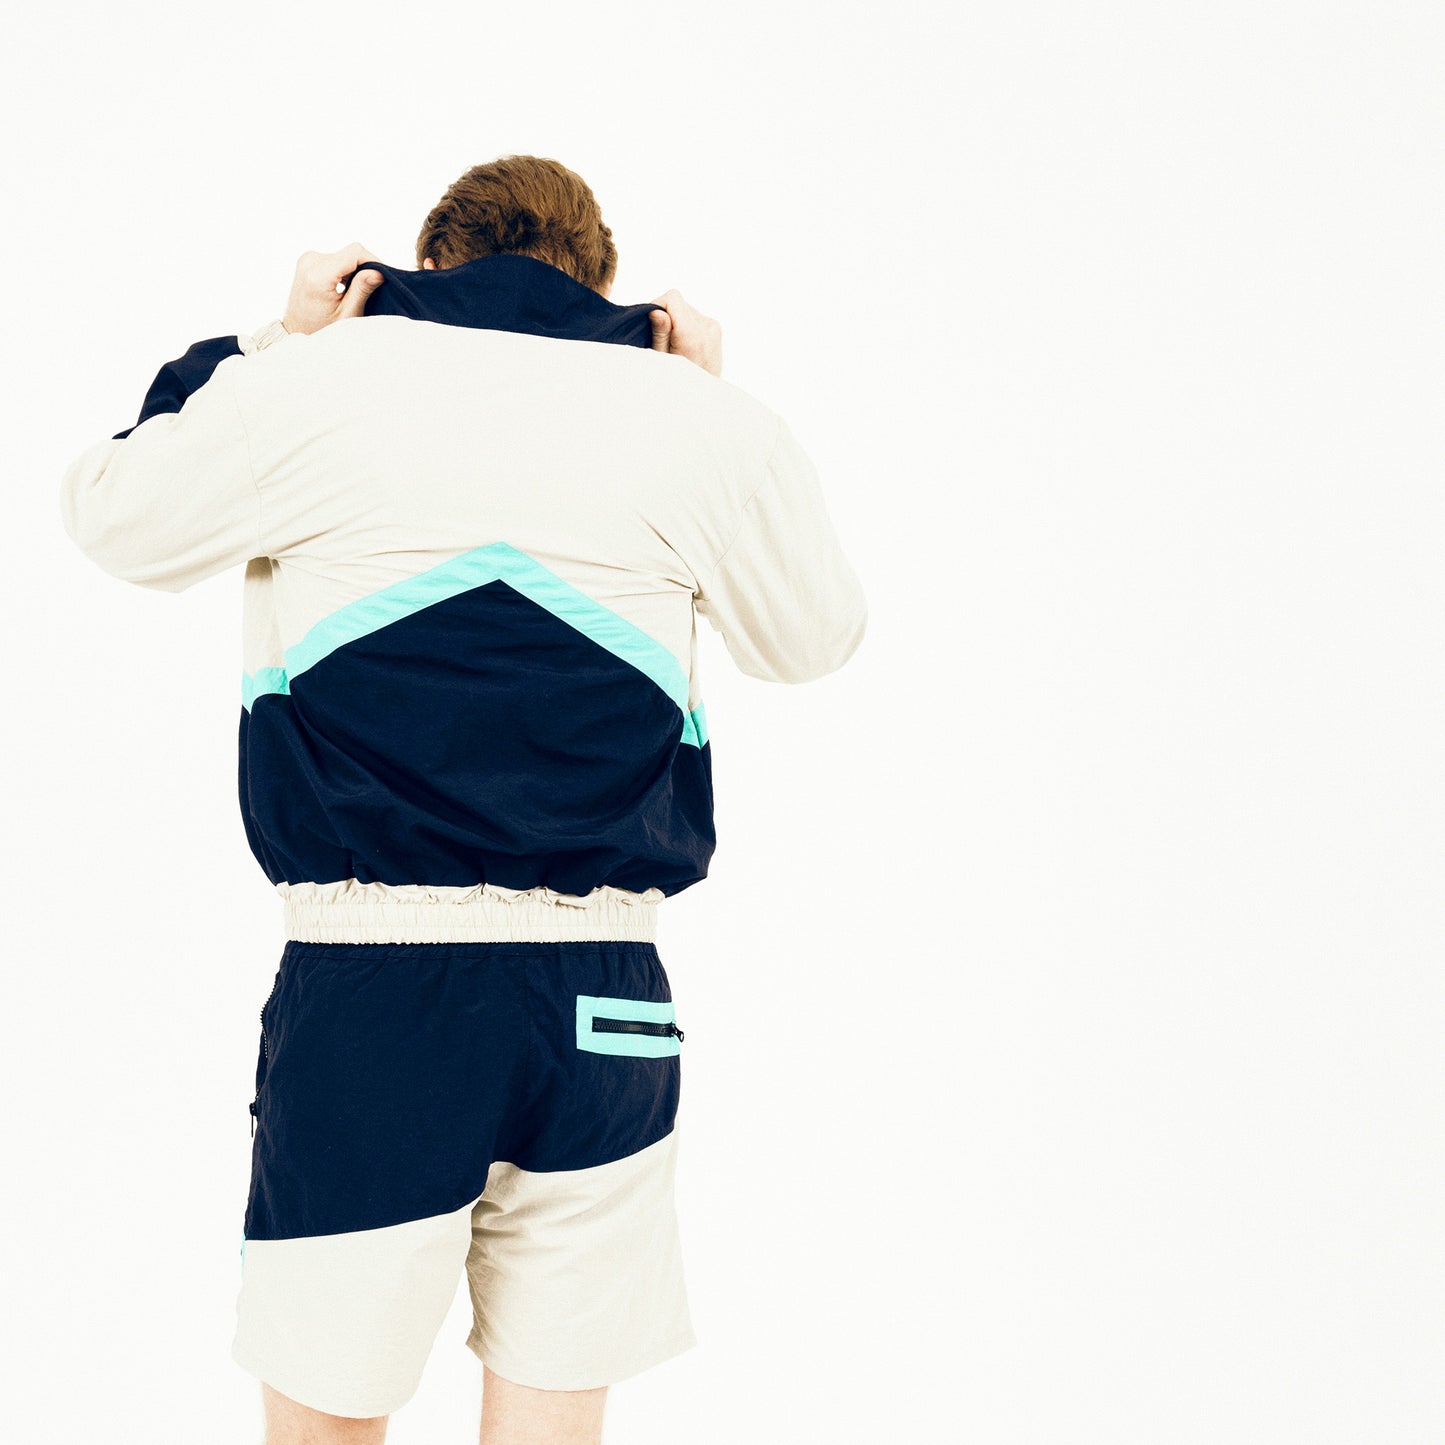 inite trackie shorts in overcast – arki apparel